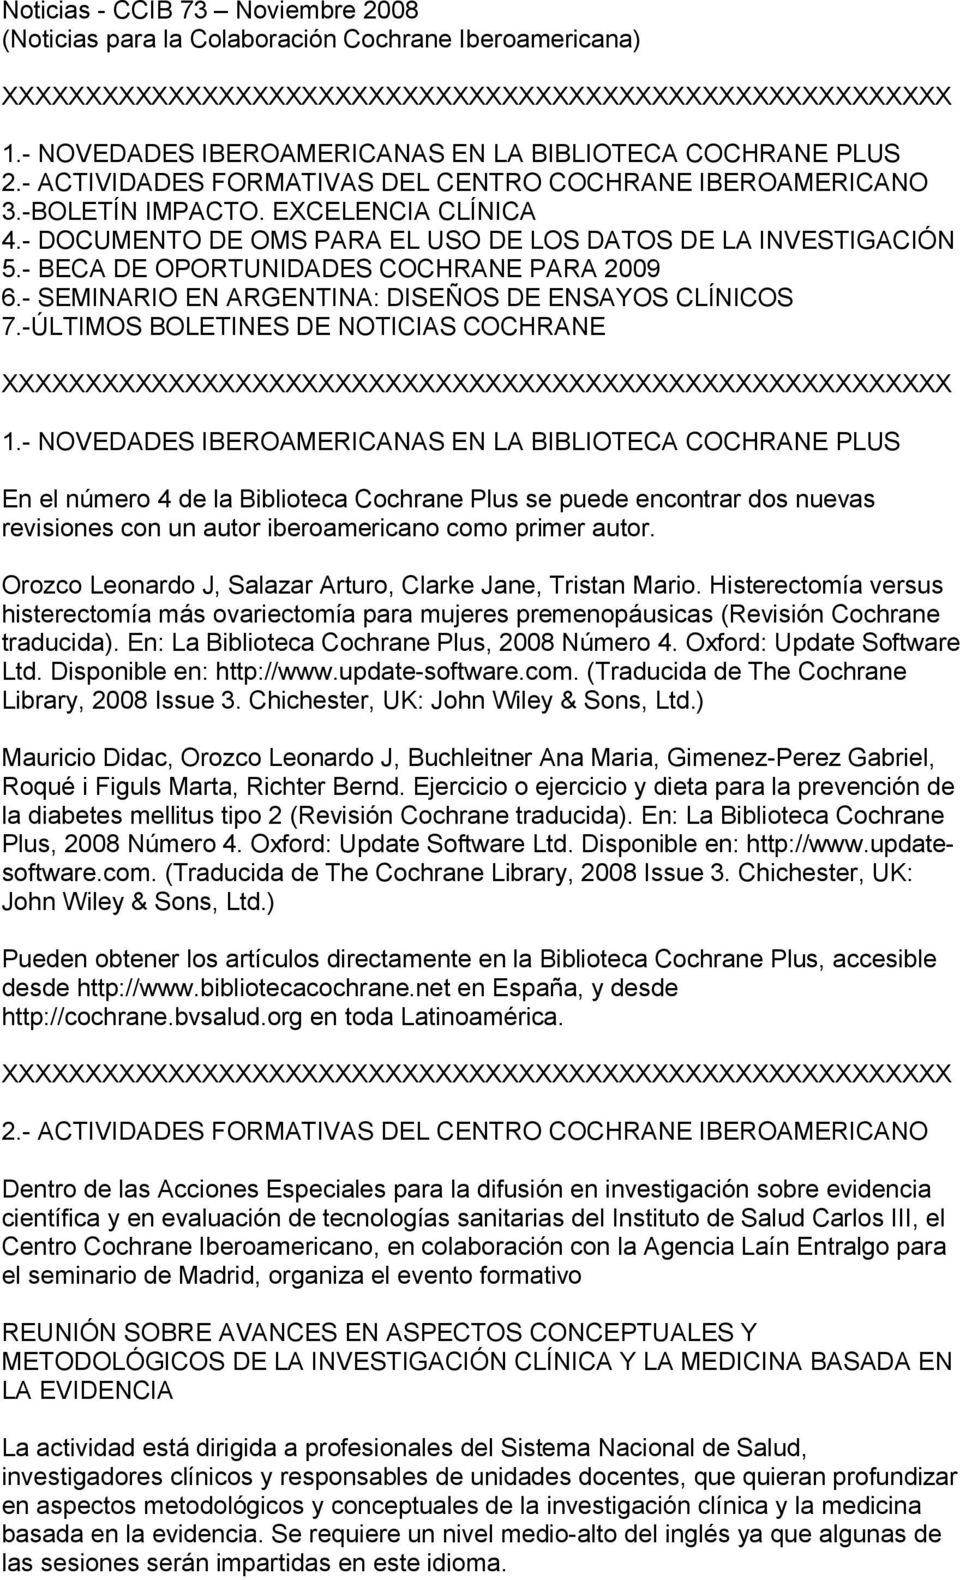 - BECA DE OPORTUNIDADES COCHRANE PARA 2009 6.- SEMINARIO EN ARGENTINA: DISEÑOS DE ENSAYOS CLÍNICOS 7.-ÚLTIMOS BOLETINES DE NOTICIAS COCHRANE 1.